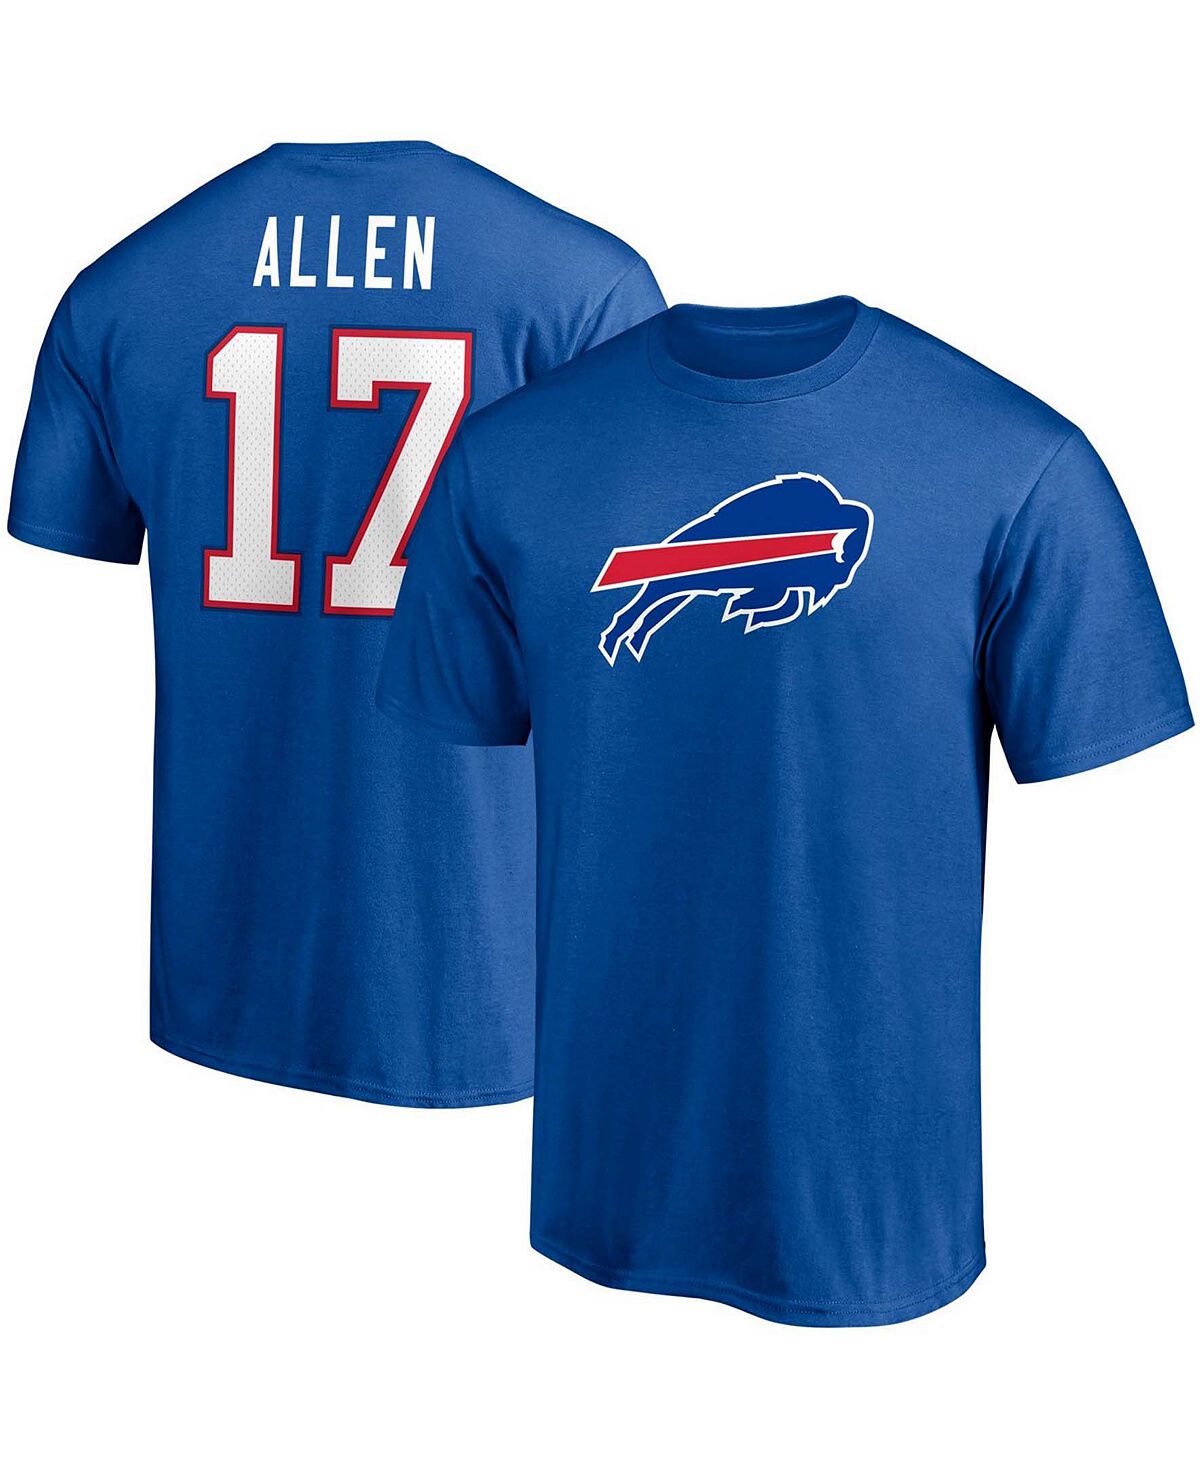 Мужская футболка с именем и номером игрока Josh Allen Royal Buffalo Bills Fanatics аллен джош не моргай выпуск 1